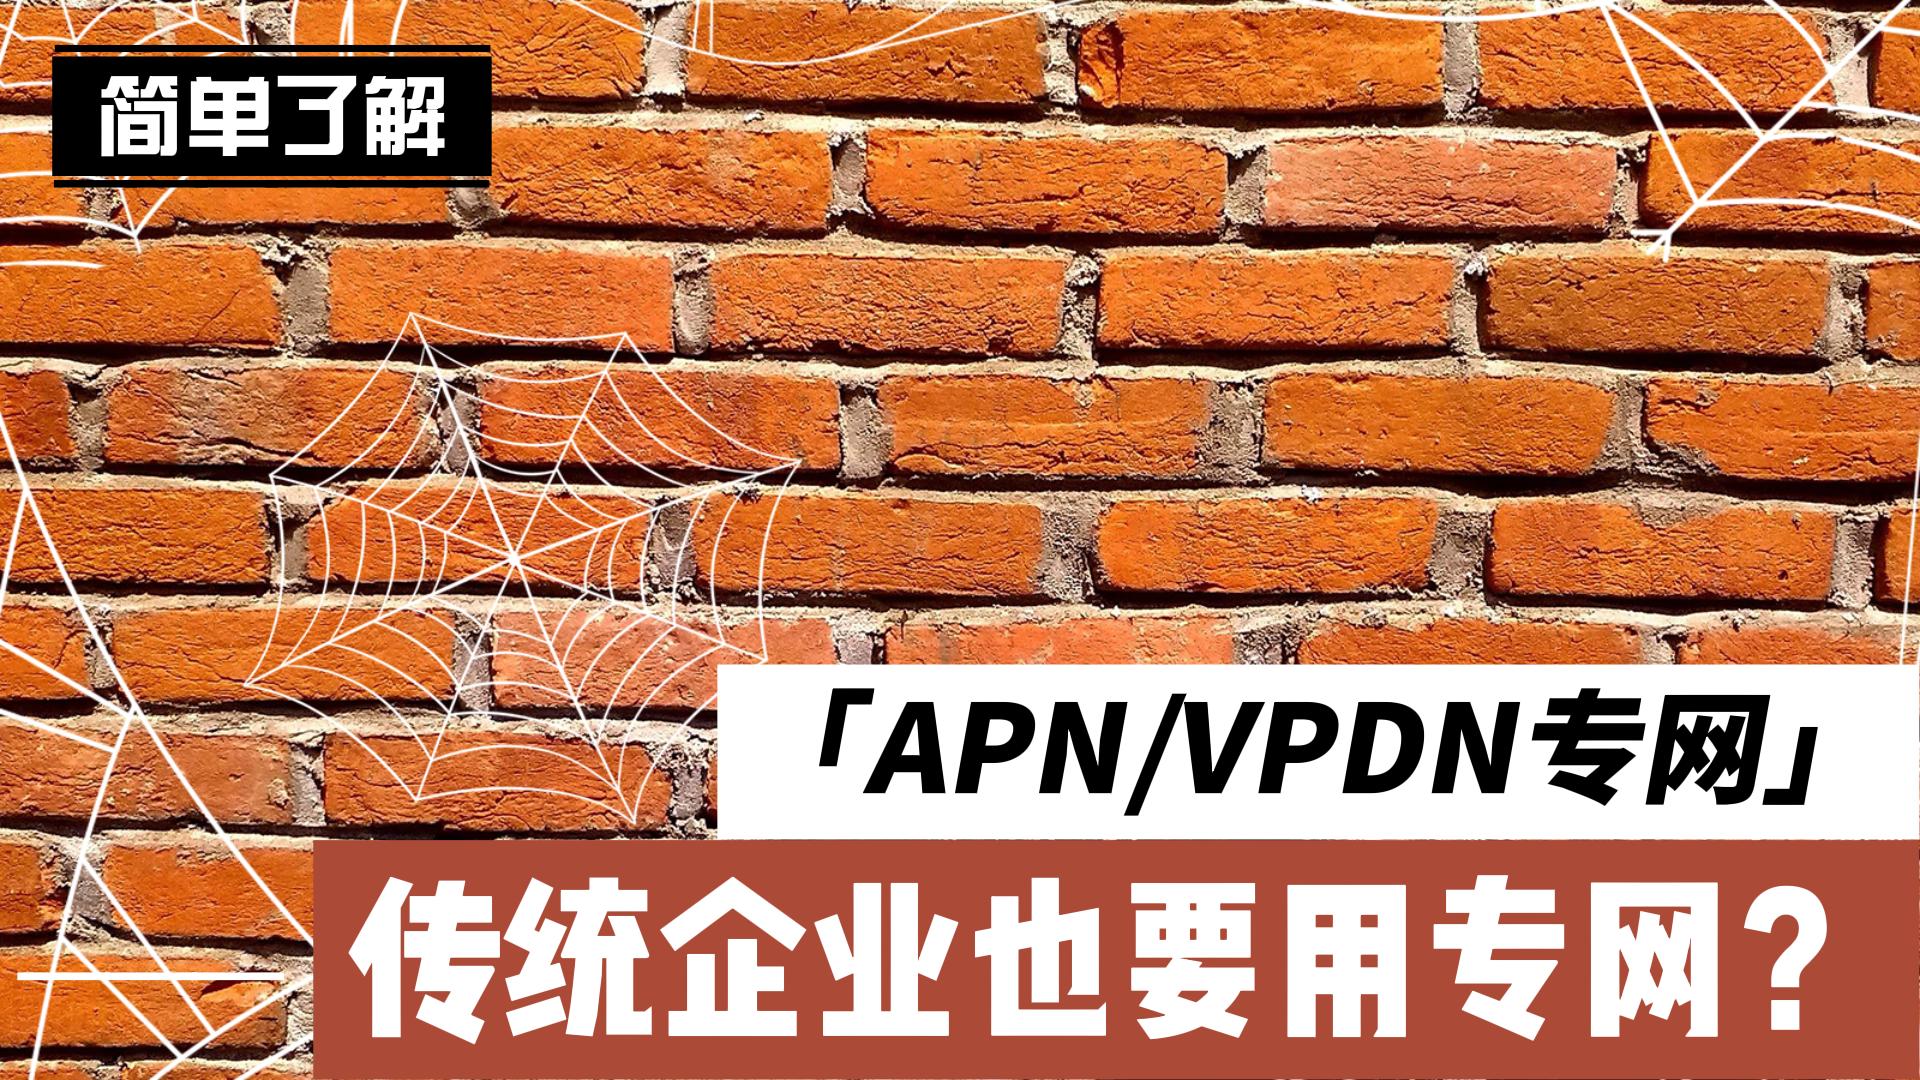 传统企业也要用专网？带你简单了解什么是APN/VPDN专网